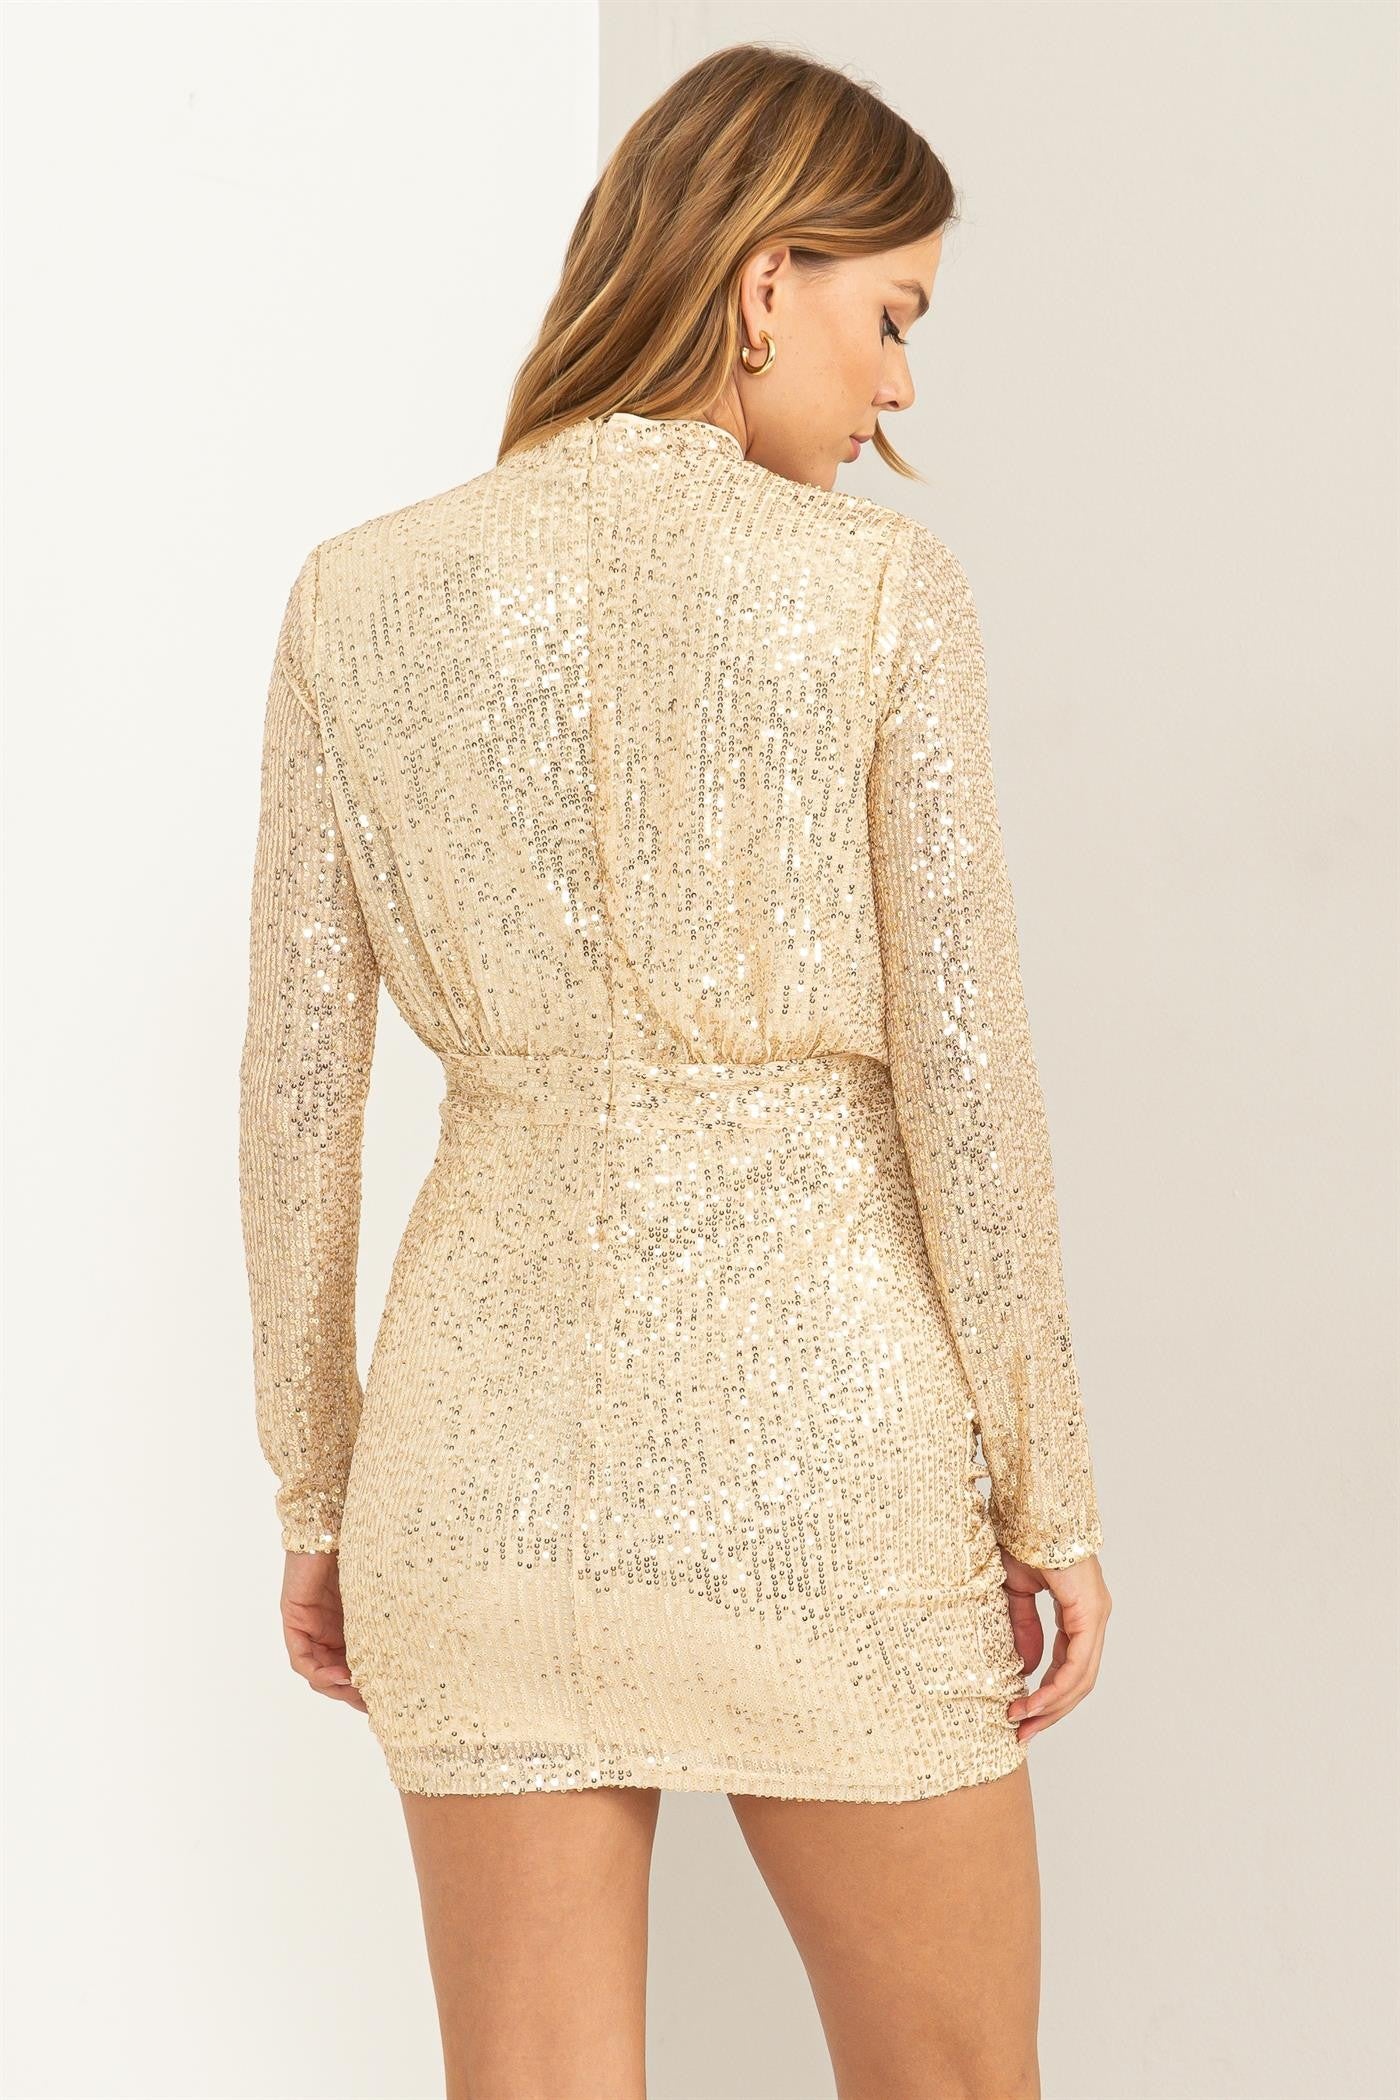 Hyfve- Sparkling Sequin Embellished Dress